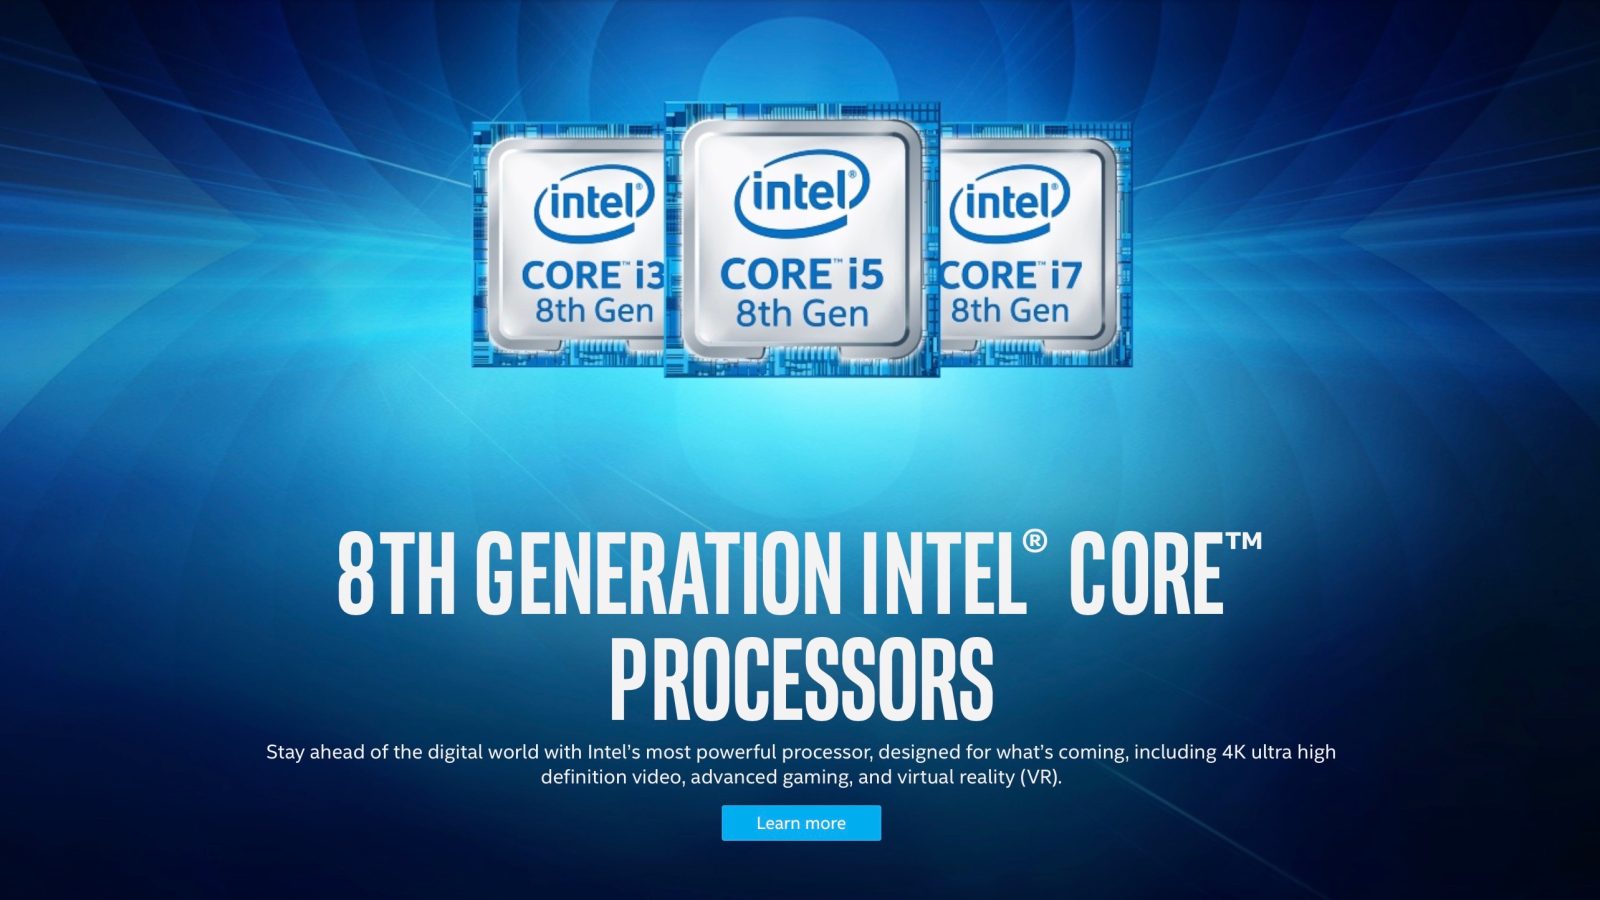 Интел i5 поколения. Intel Core 8th Gen. Intel Core 5 8th Gen. Intel Core 8. Поколения процессоров Intel Core i5.